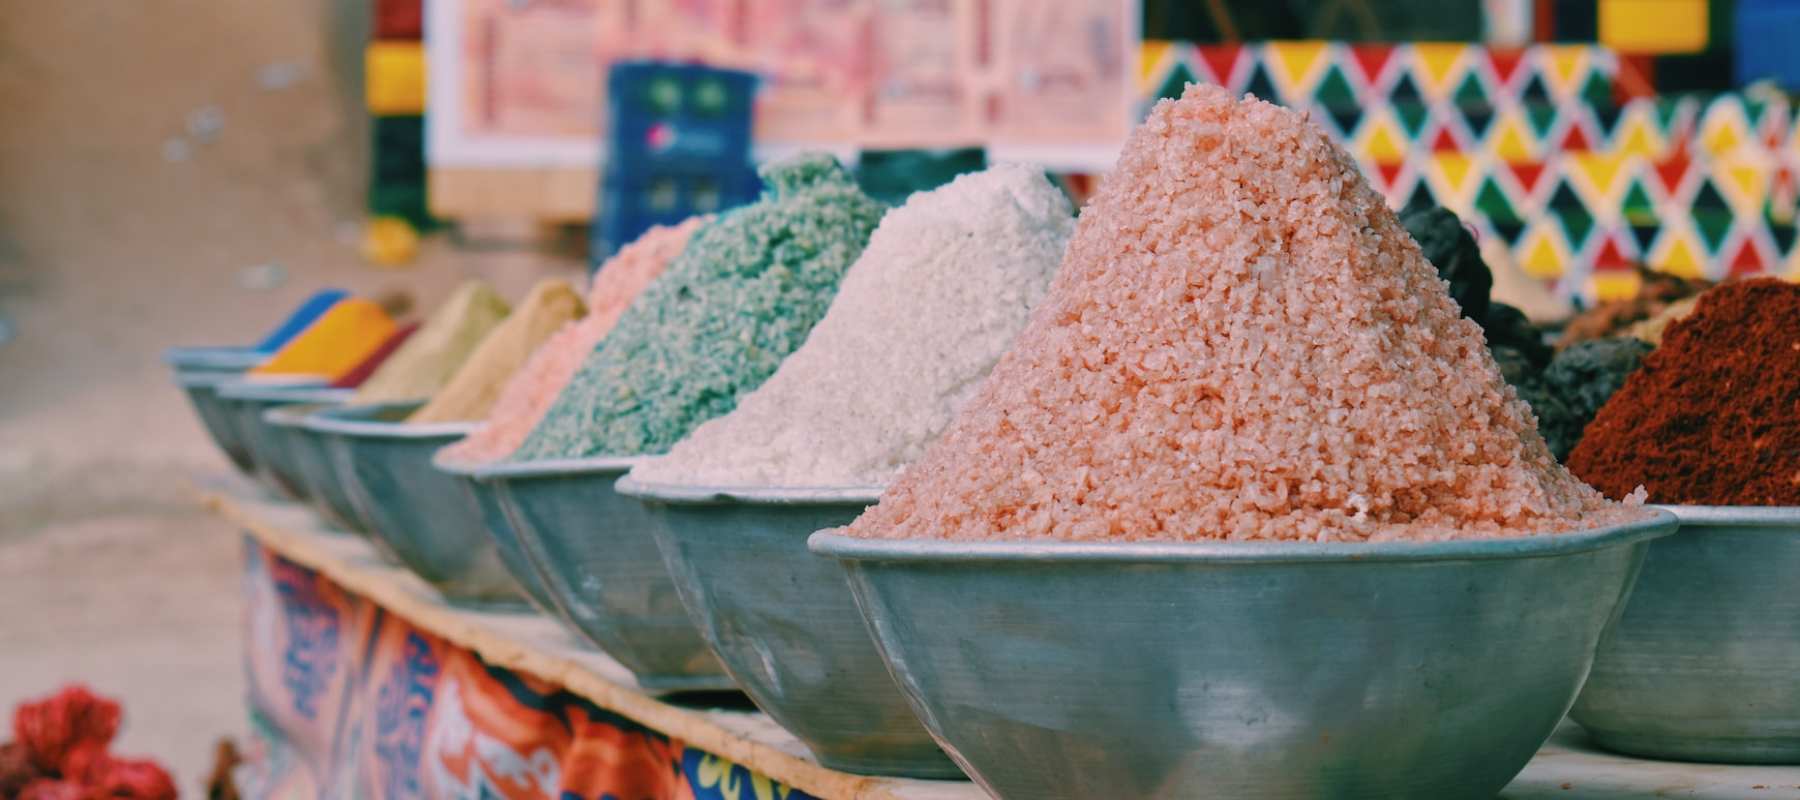 Wie viel kostet das teuerste Salz der Welt?